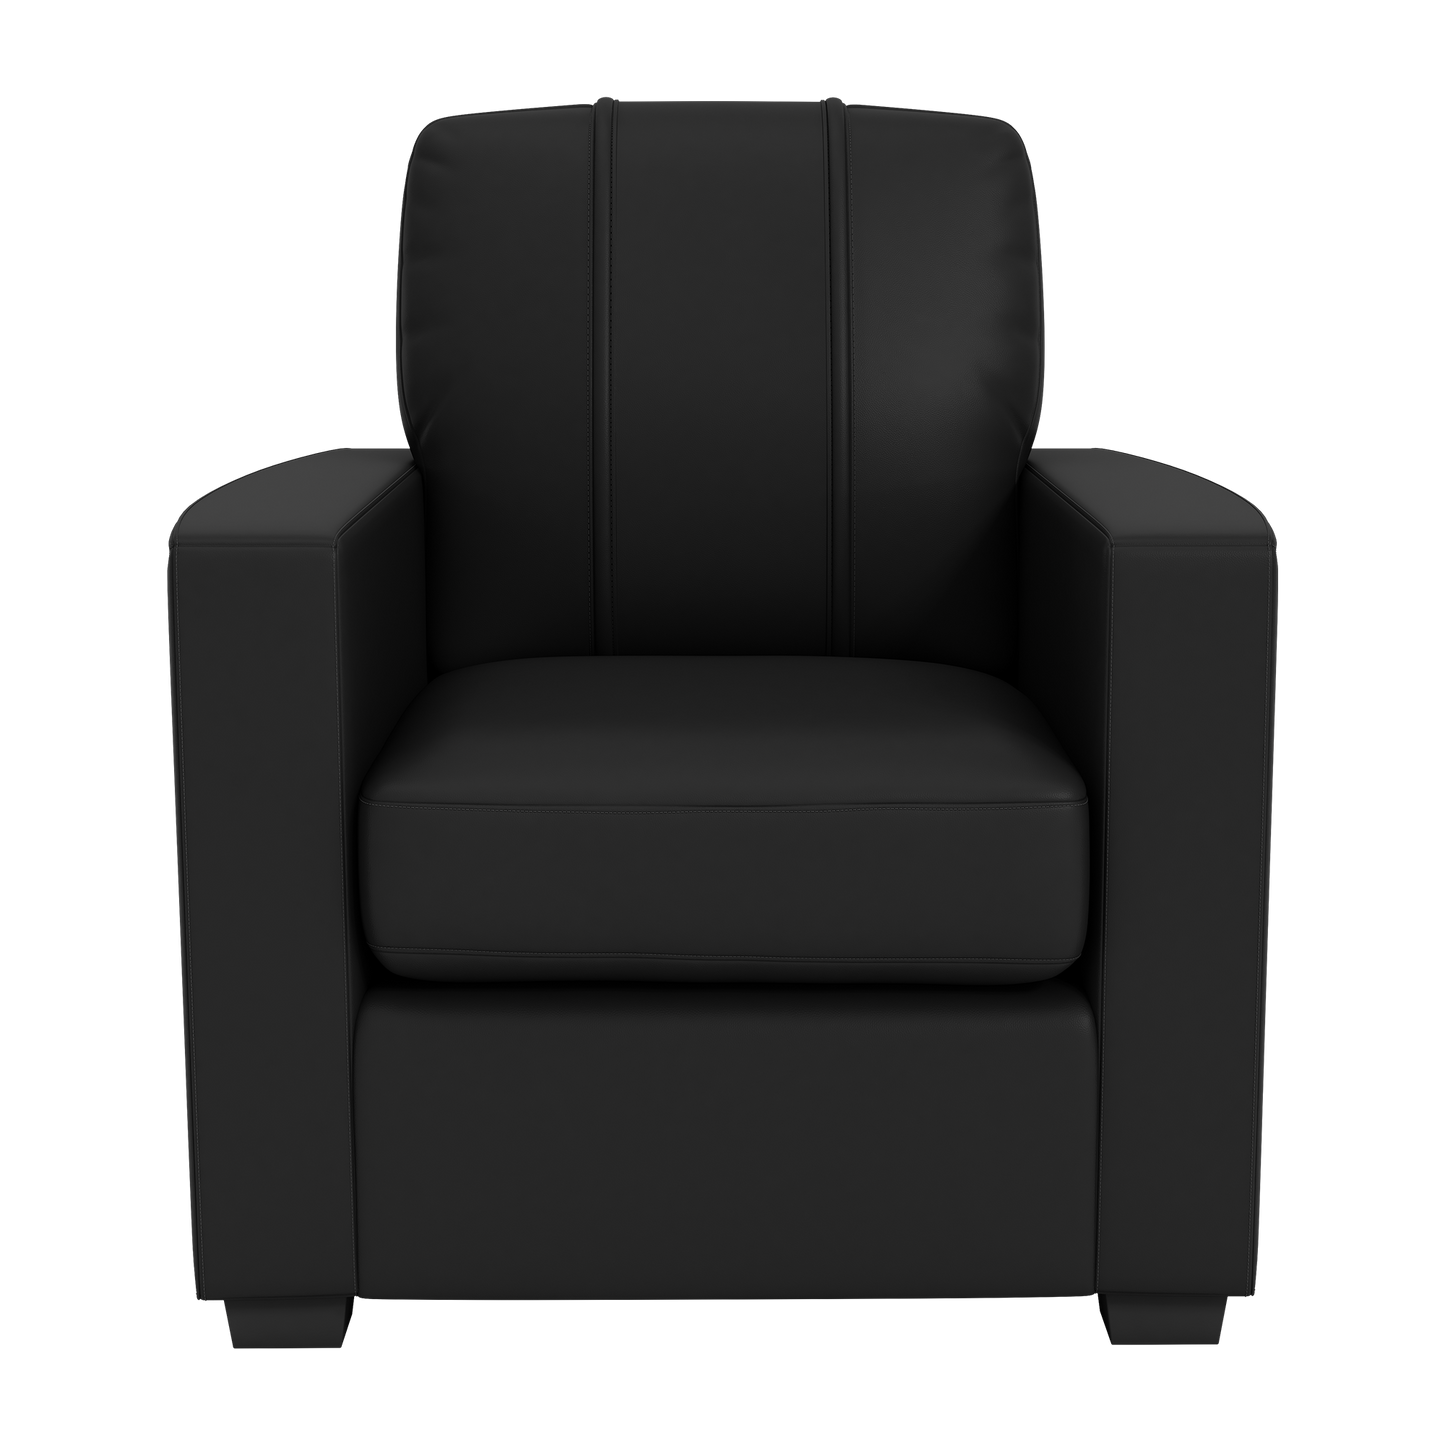 Silver Club Chair with Houston Dynamo Wordmark Logo